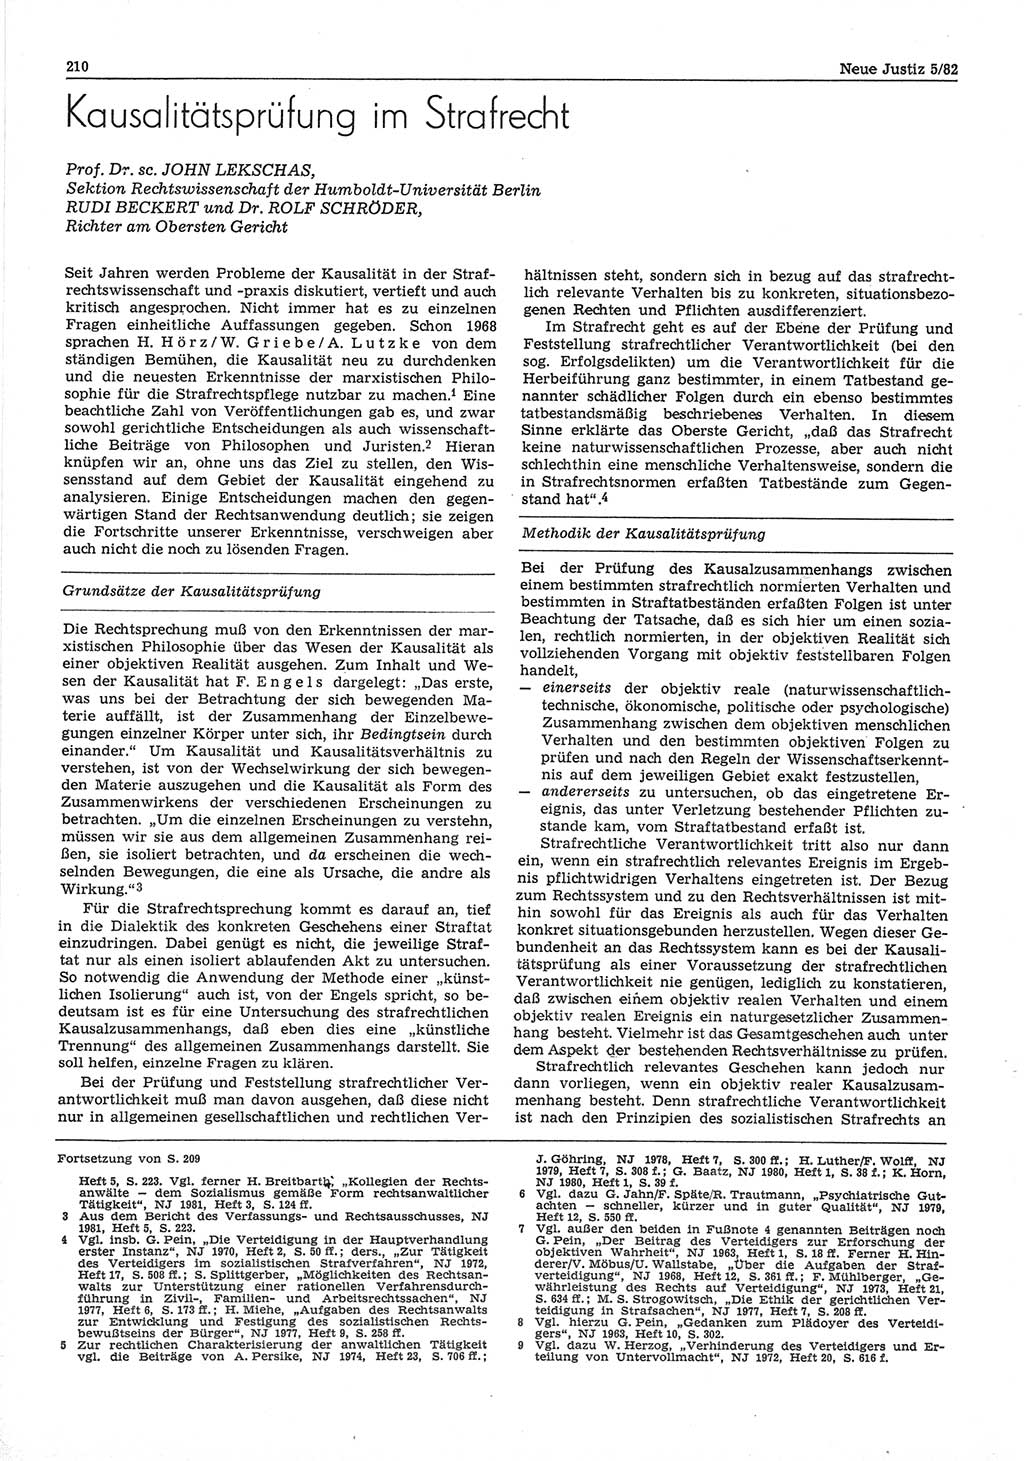 Neue Justiz (NJ), Zeitschrift für sozialistisches Recht und Gesetzlichkeit [Deutsche Demokratische Republik (DDR)], 36. Jahrgang 1982, Seite 210 (NJ DDR 1982, S. 210)